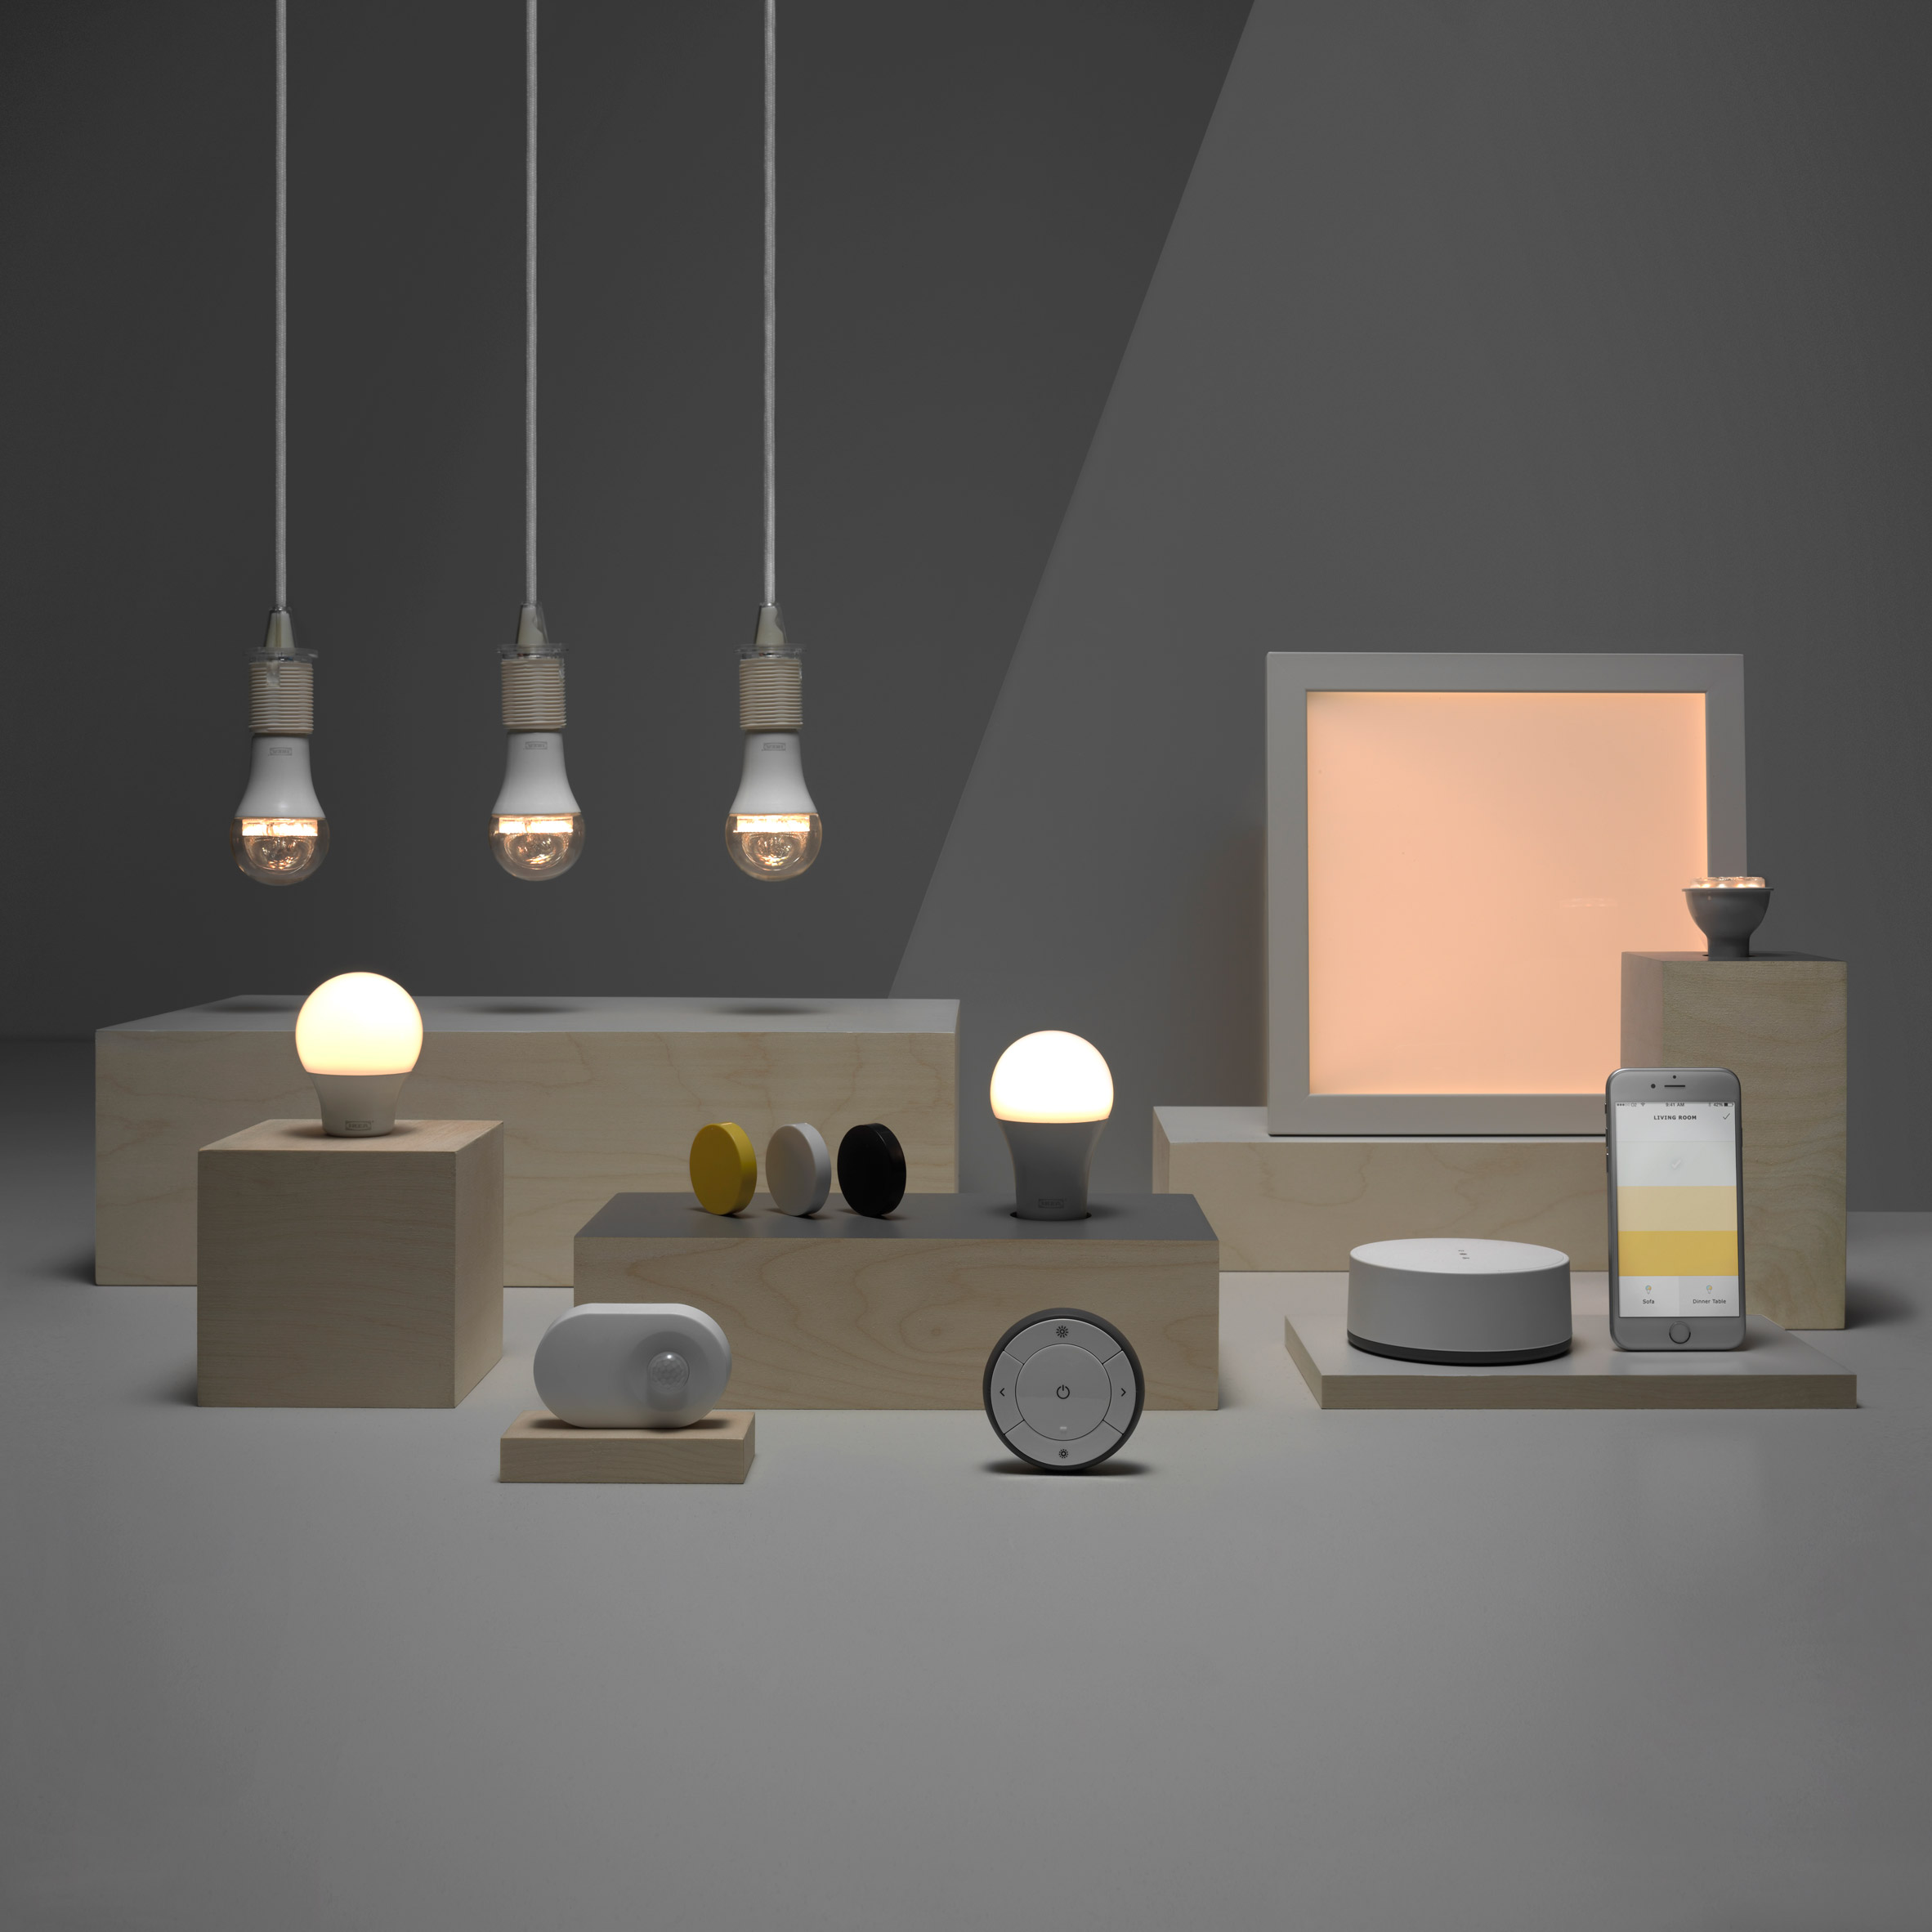 hebben zich vergist Varken Hollywood IKEA ventures into smart home products with Trådfri lighting series